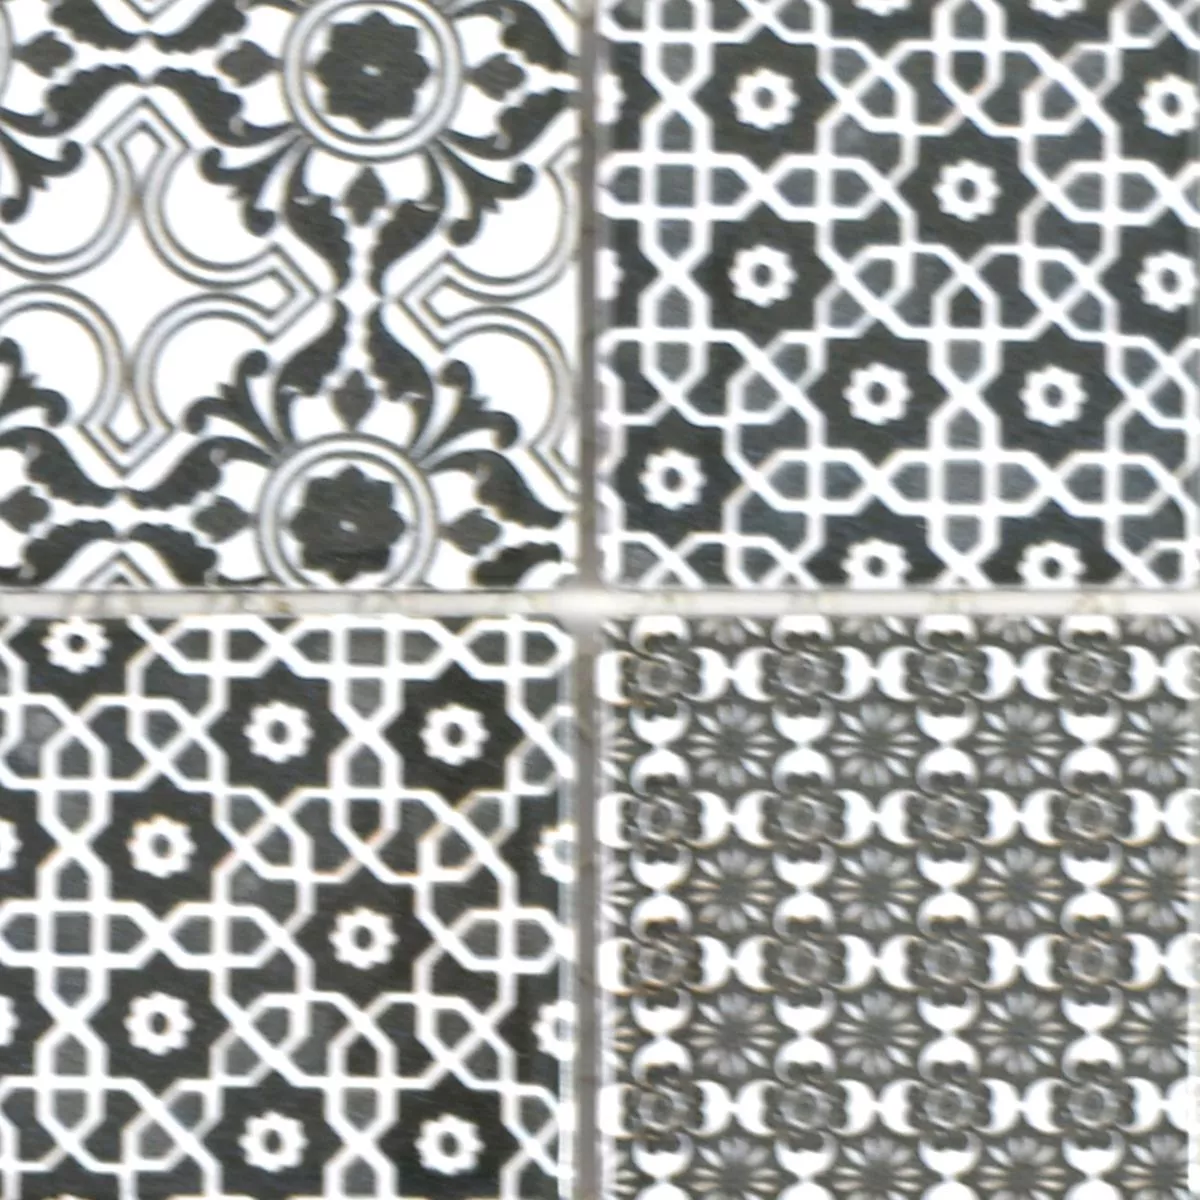 Padrão de Cerâmica Azulejo Mosaico Daymion Óptica Retrô Quadrada Preto